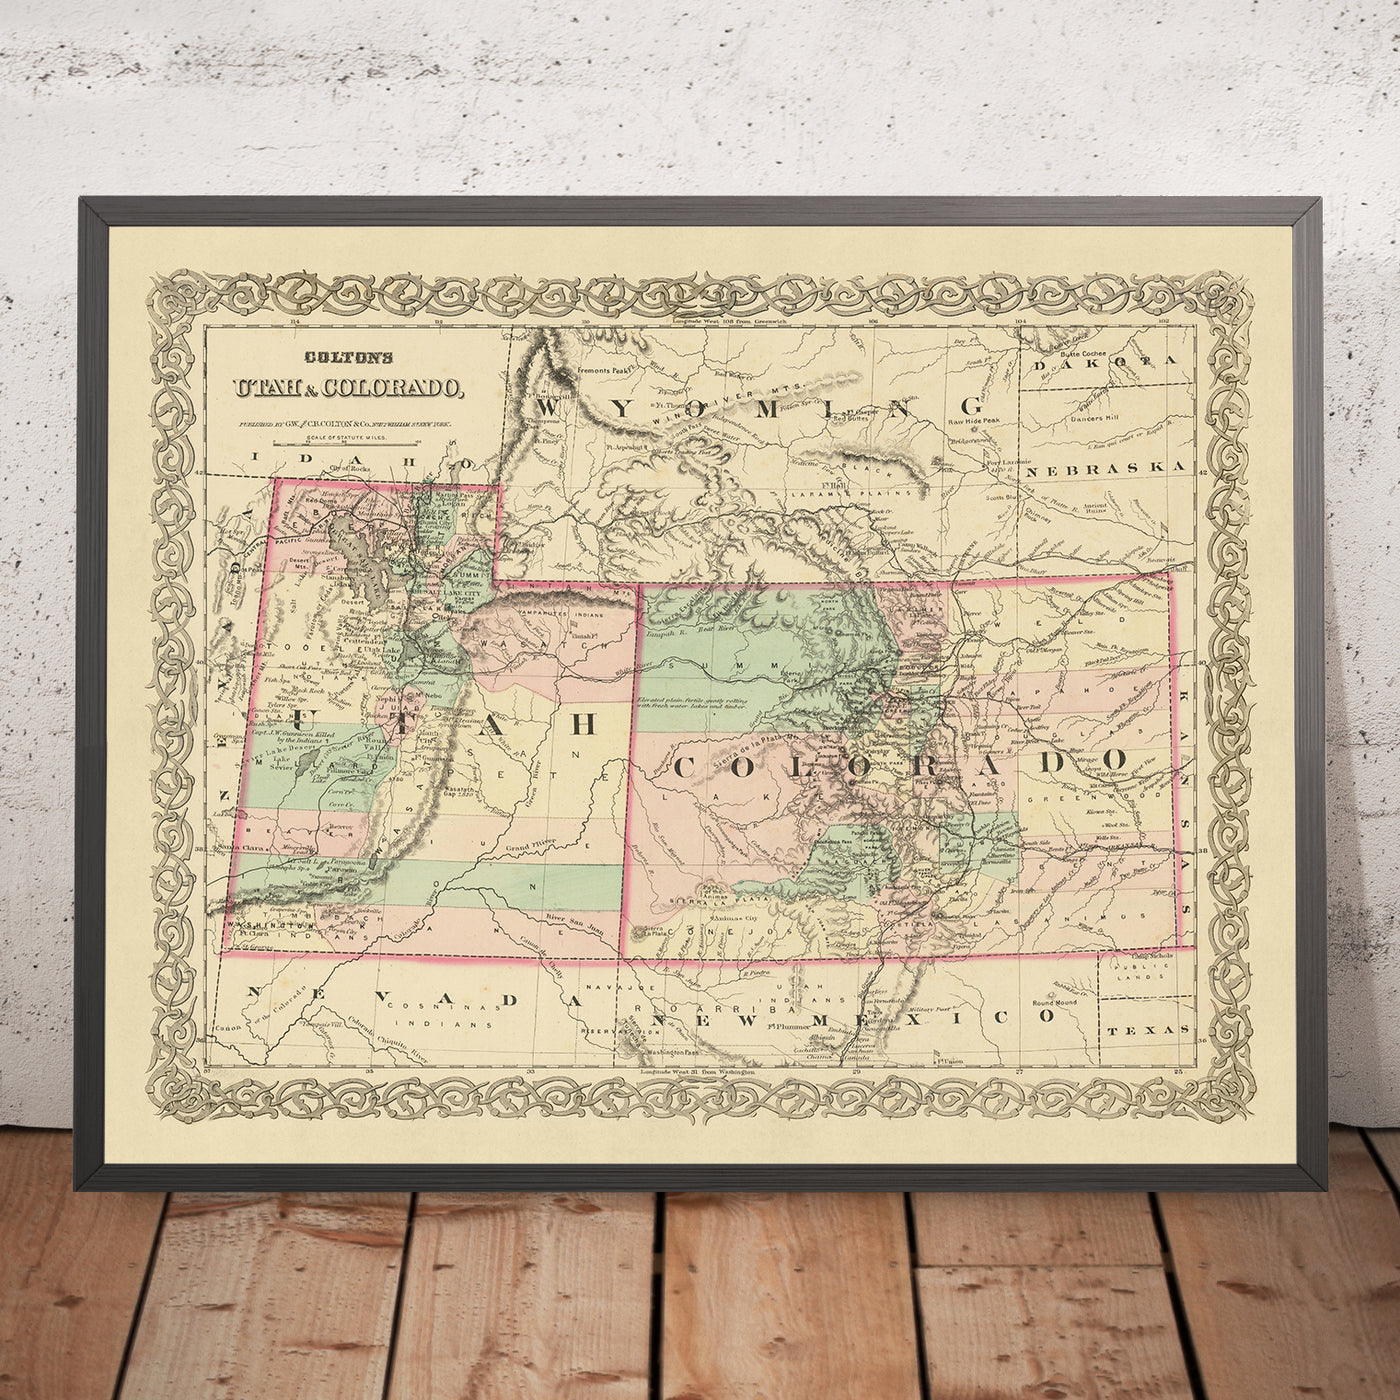 Ancienne carte de l'Utah et du Colorado par JH Colton, 1873 : Salt Lake City, Denver, Provo, Colorado Springs, Fort Collins